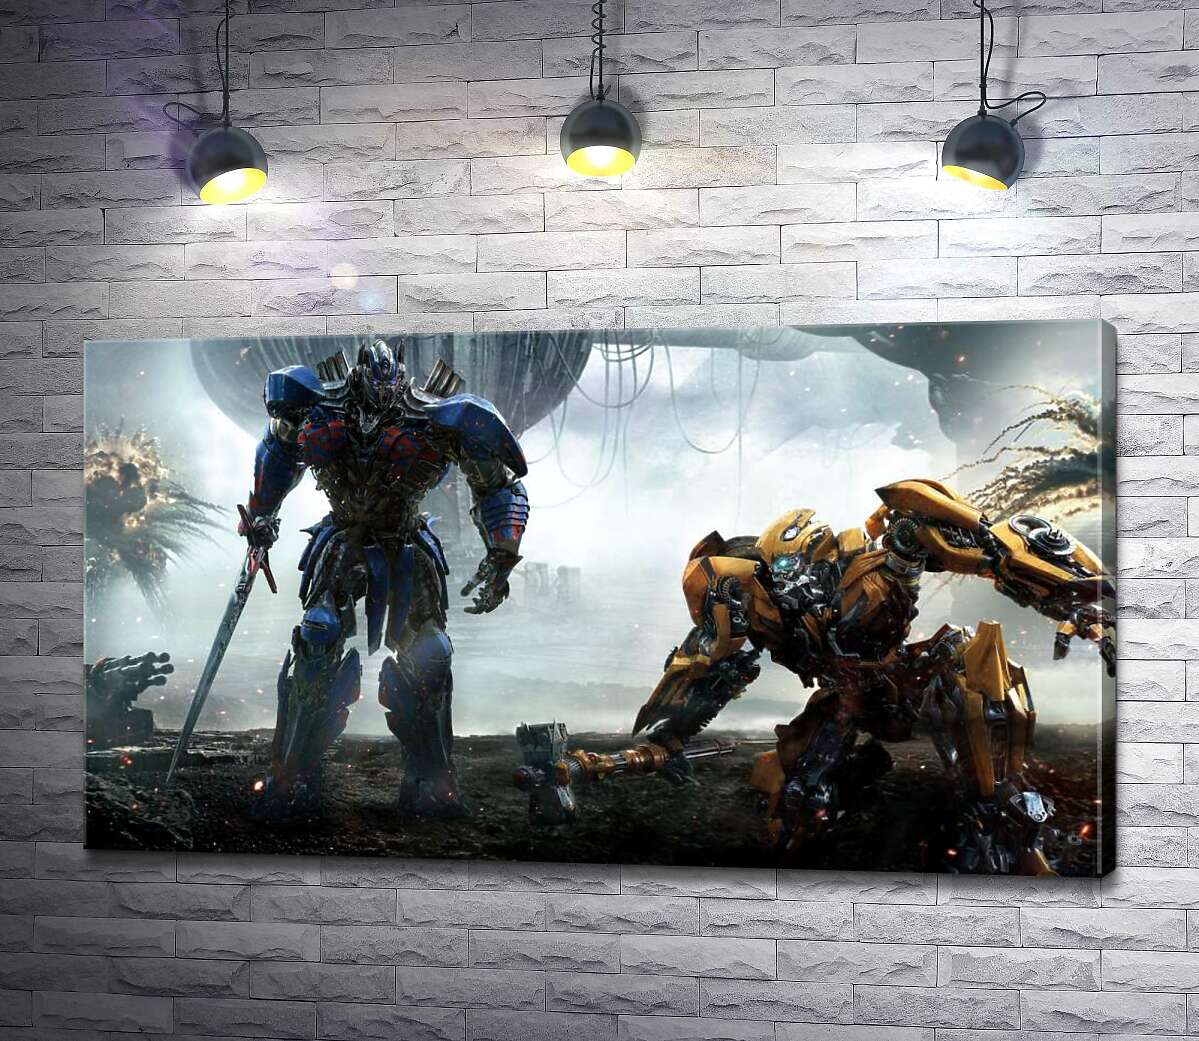 картина Автоботы Оптимус Прайм (Optimus Prime) и Бамблби (Bumblebee) – герои фильма "Трансформеры" (Transformers)